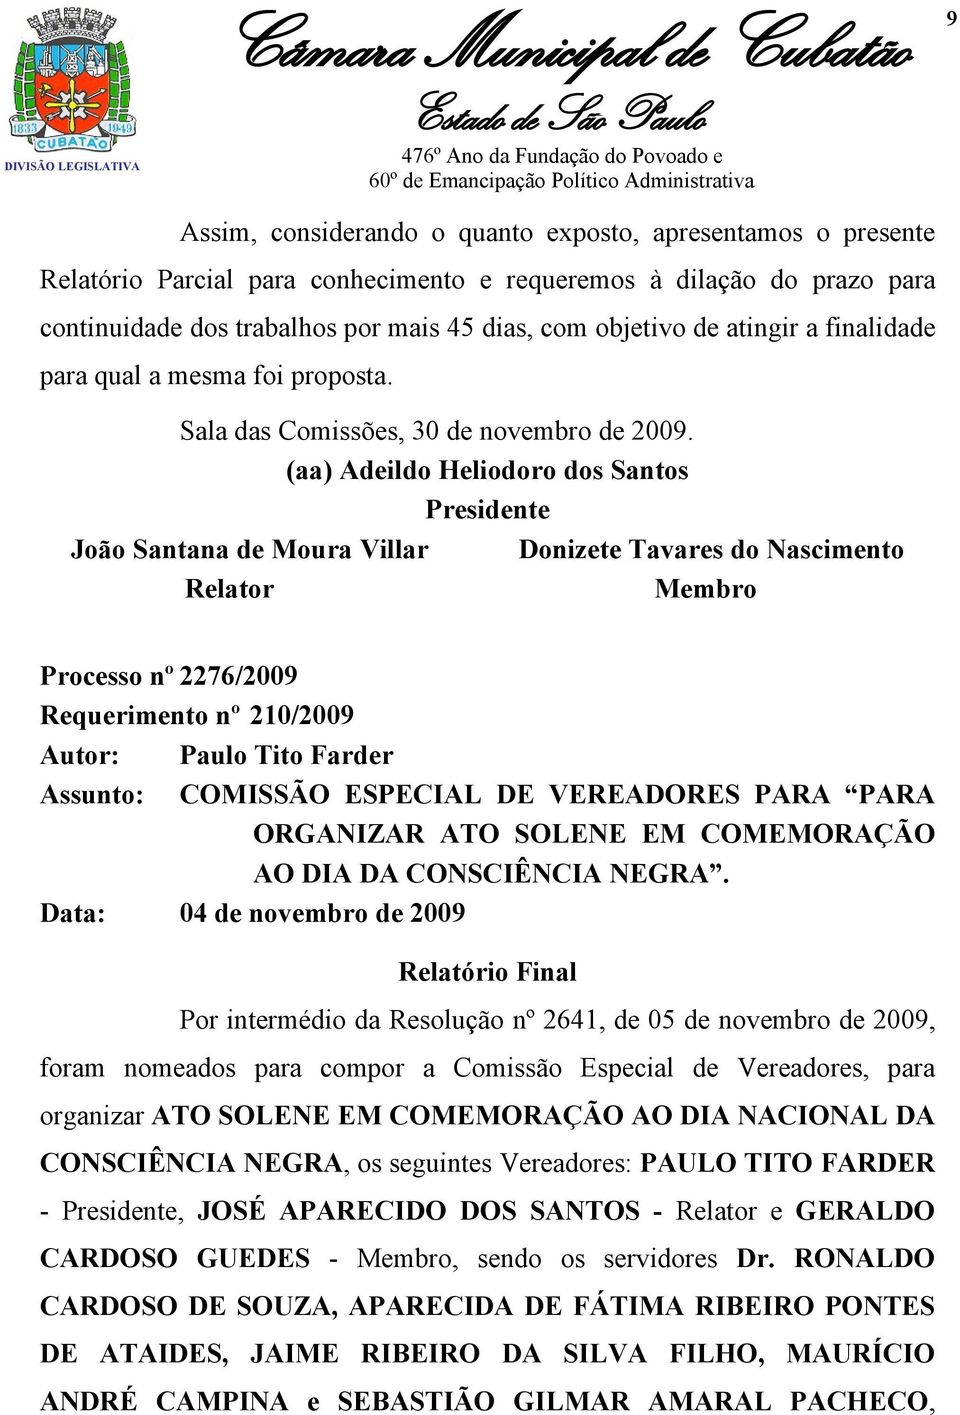 (aa) Adeildo Heliodoro dos Santos Presidente João Santana de Moura Villar Donizete Tavares do Nascimento Relator Membro Processo nº 2276/2009 Requerimento nº 210/2009 Autor: Paulo Tito Farder